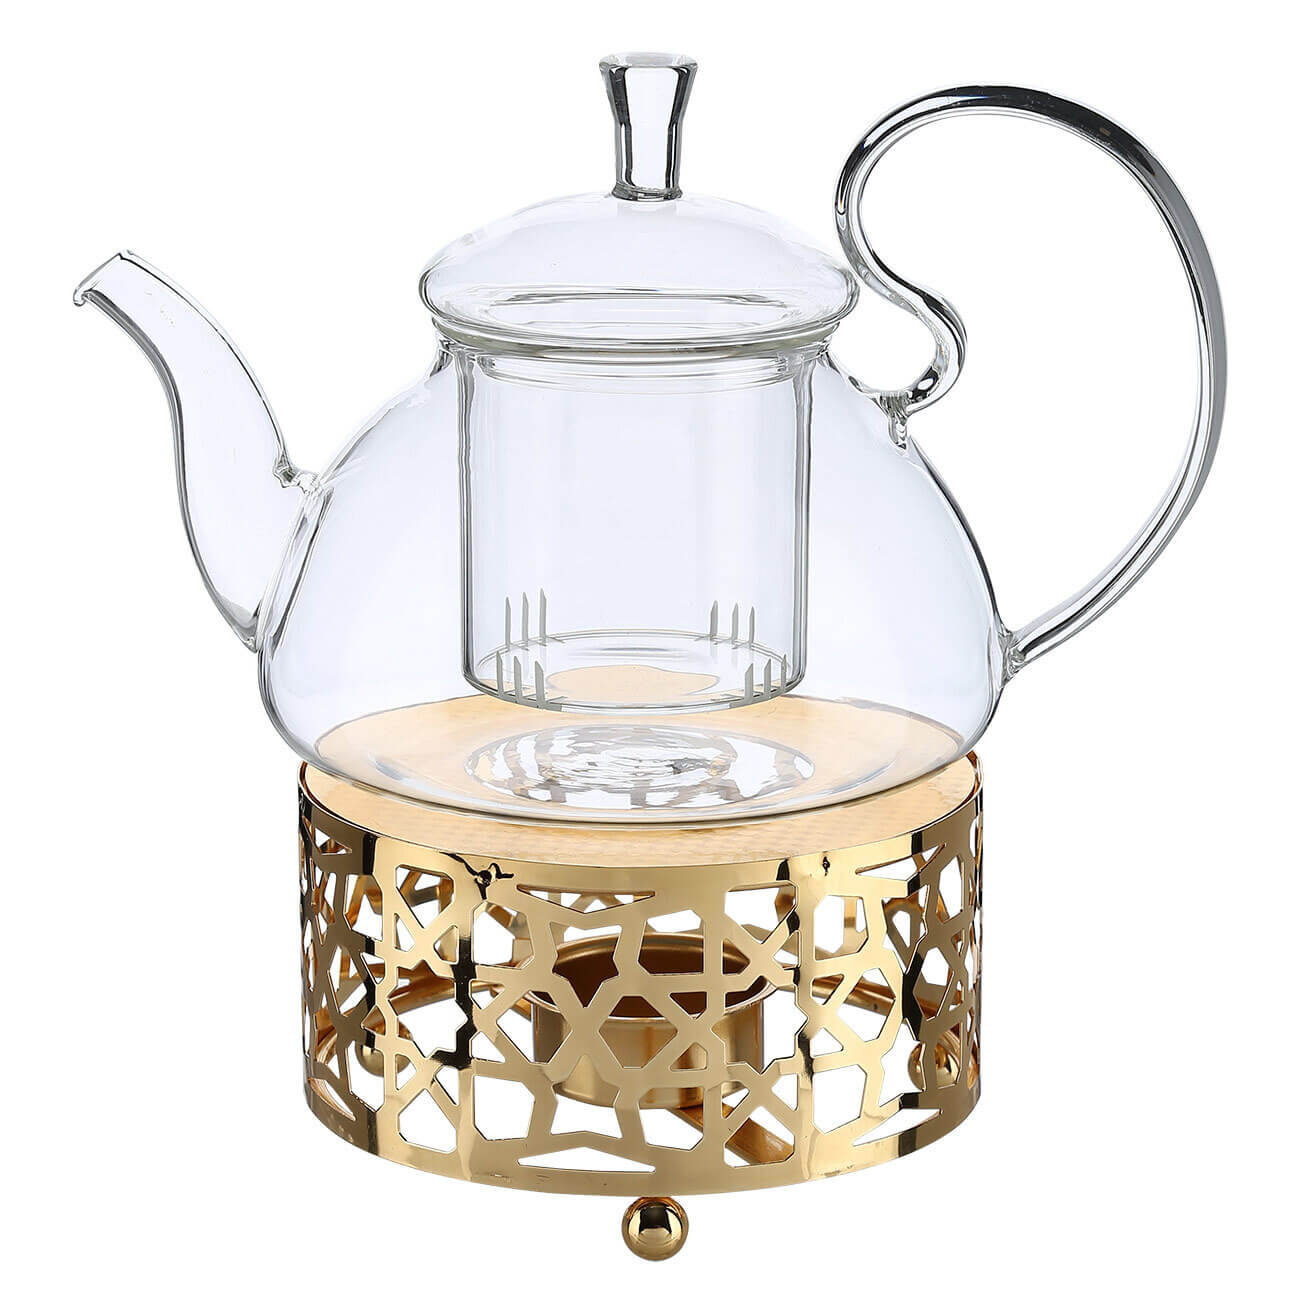 Чайник заварочный, 800 мл, с подогревом, стекло Б/металл, золотистый, Ellan kuchenland чайник заварочный 1 л стекло б macchiato